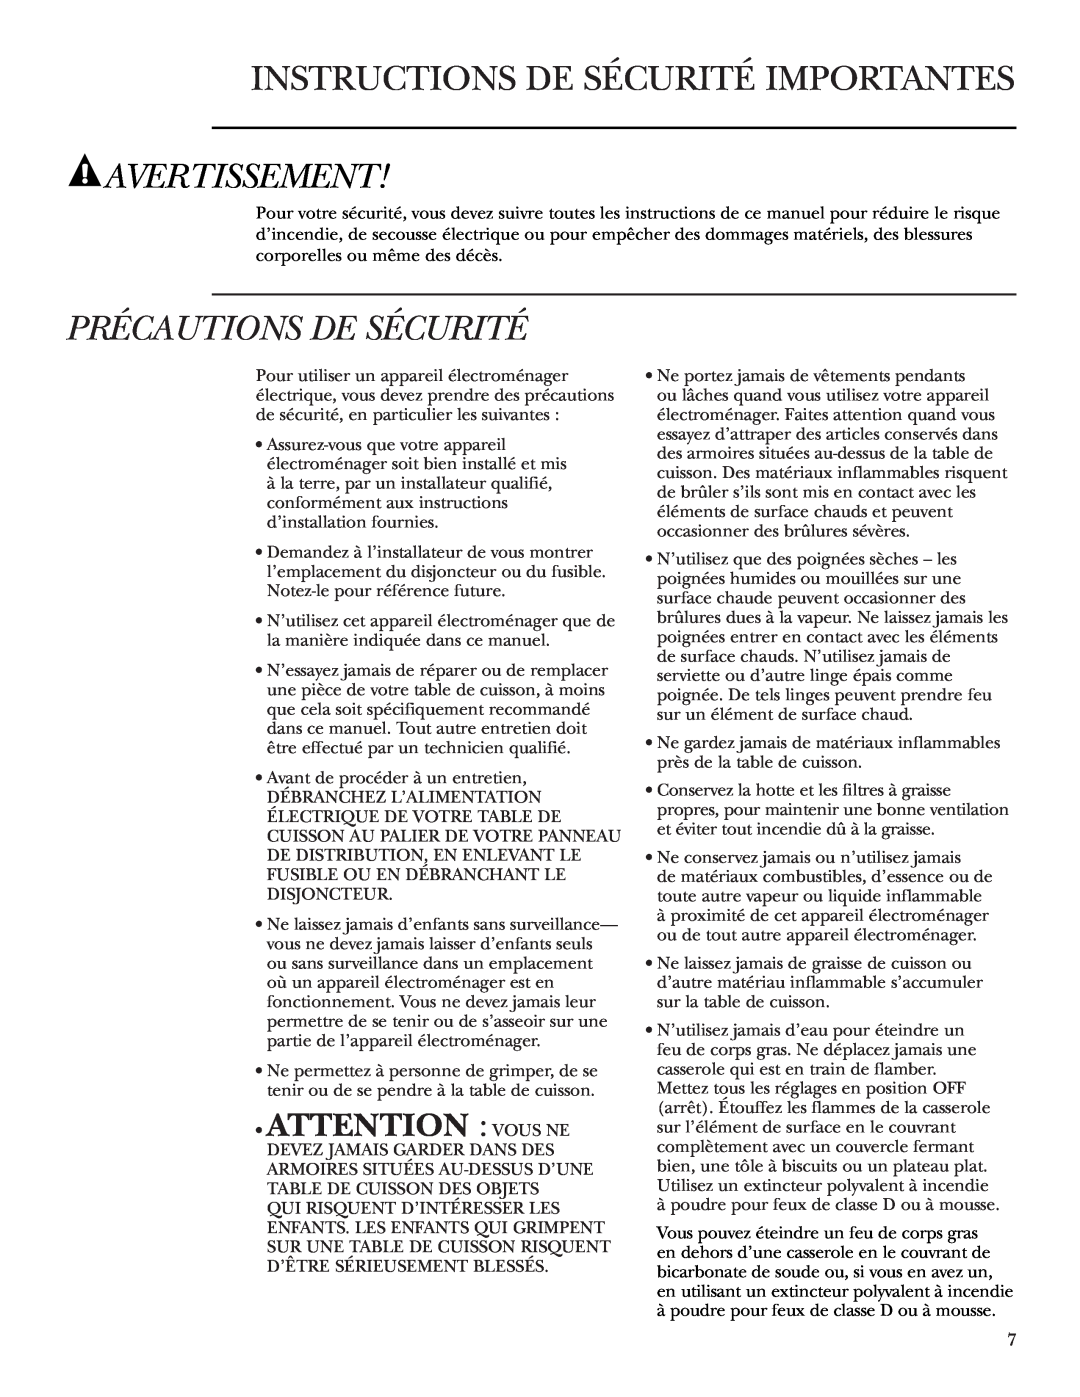 GE Monogram ZEU36K Instructions De Sécurité Importantes, Avertissement, Précautions De Sécurité, Attention Vous Ne 